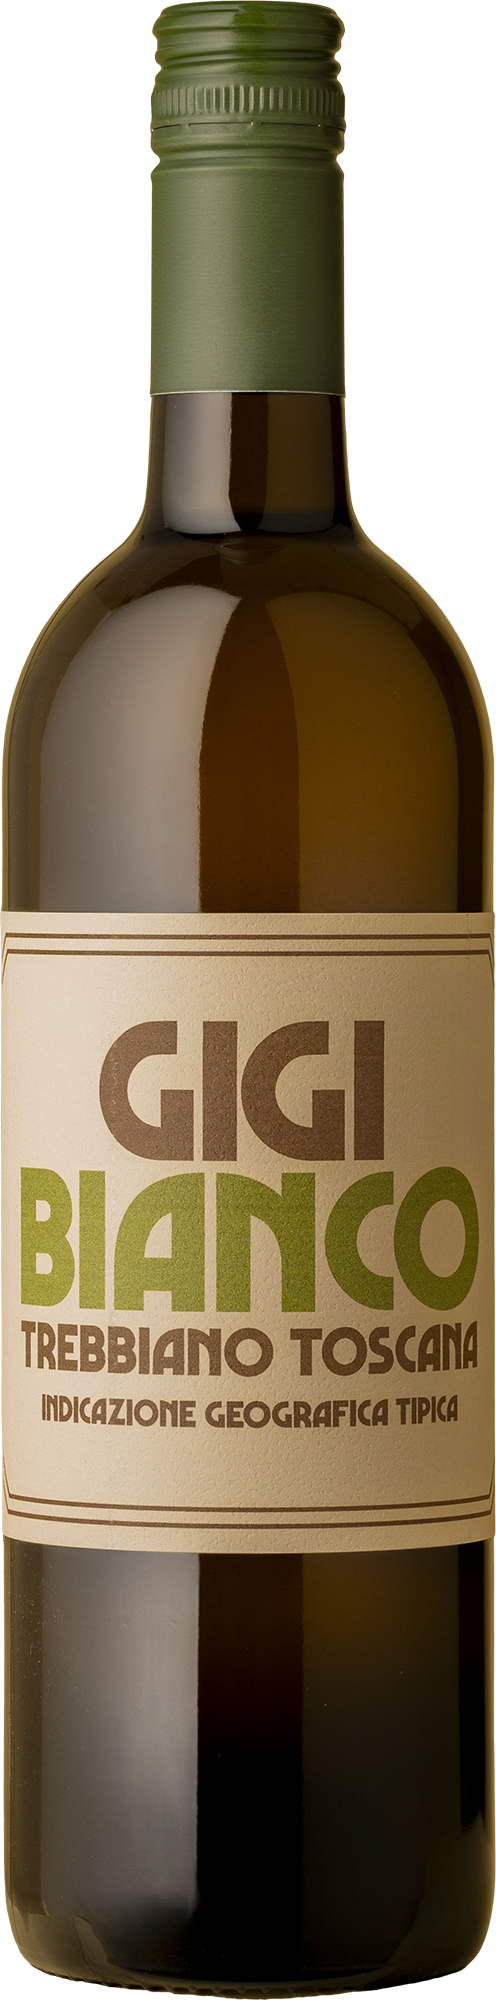 Fattori Parri - Gigi Bianco Trebbiano 2018 White Wine